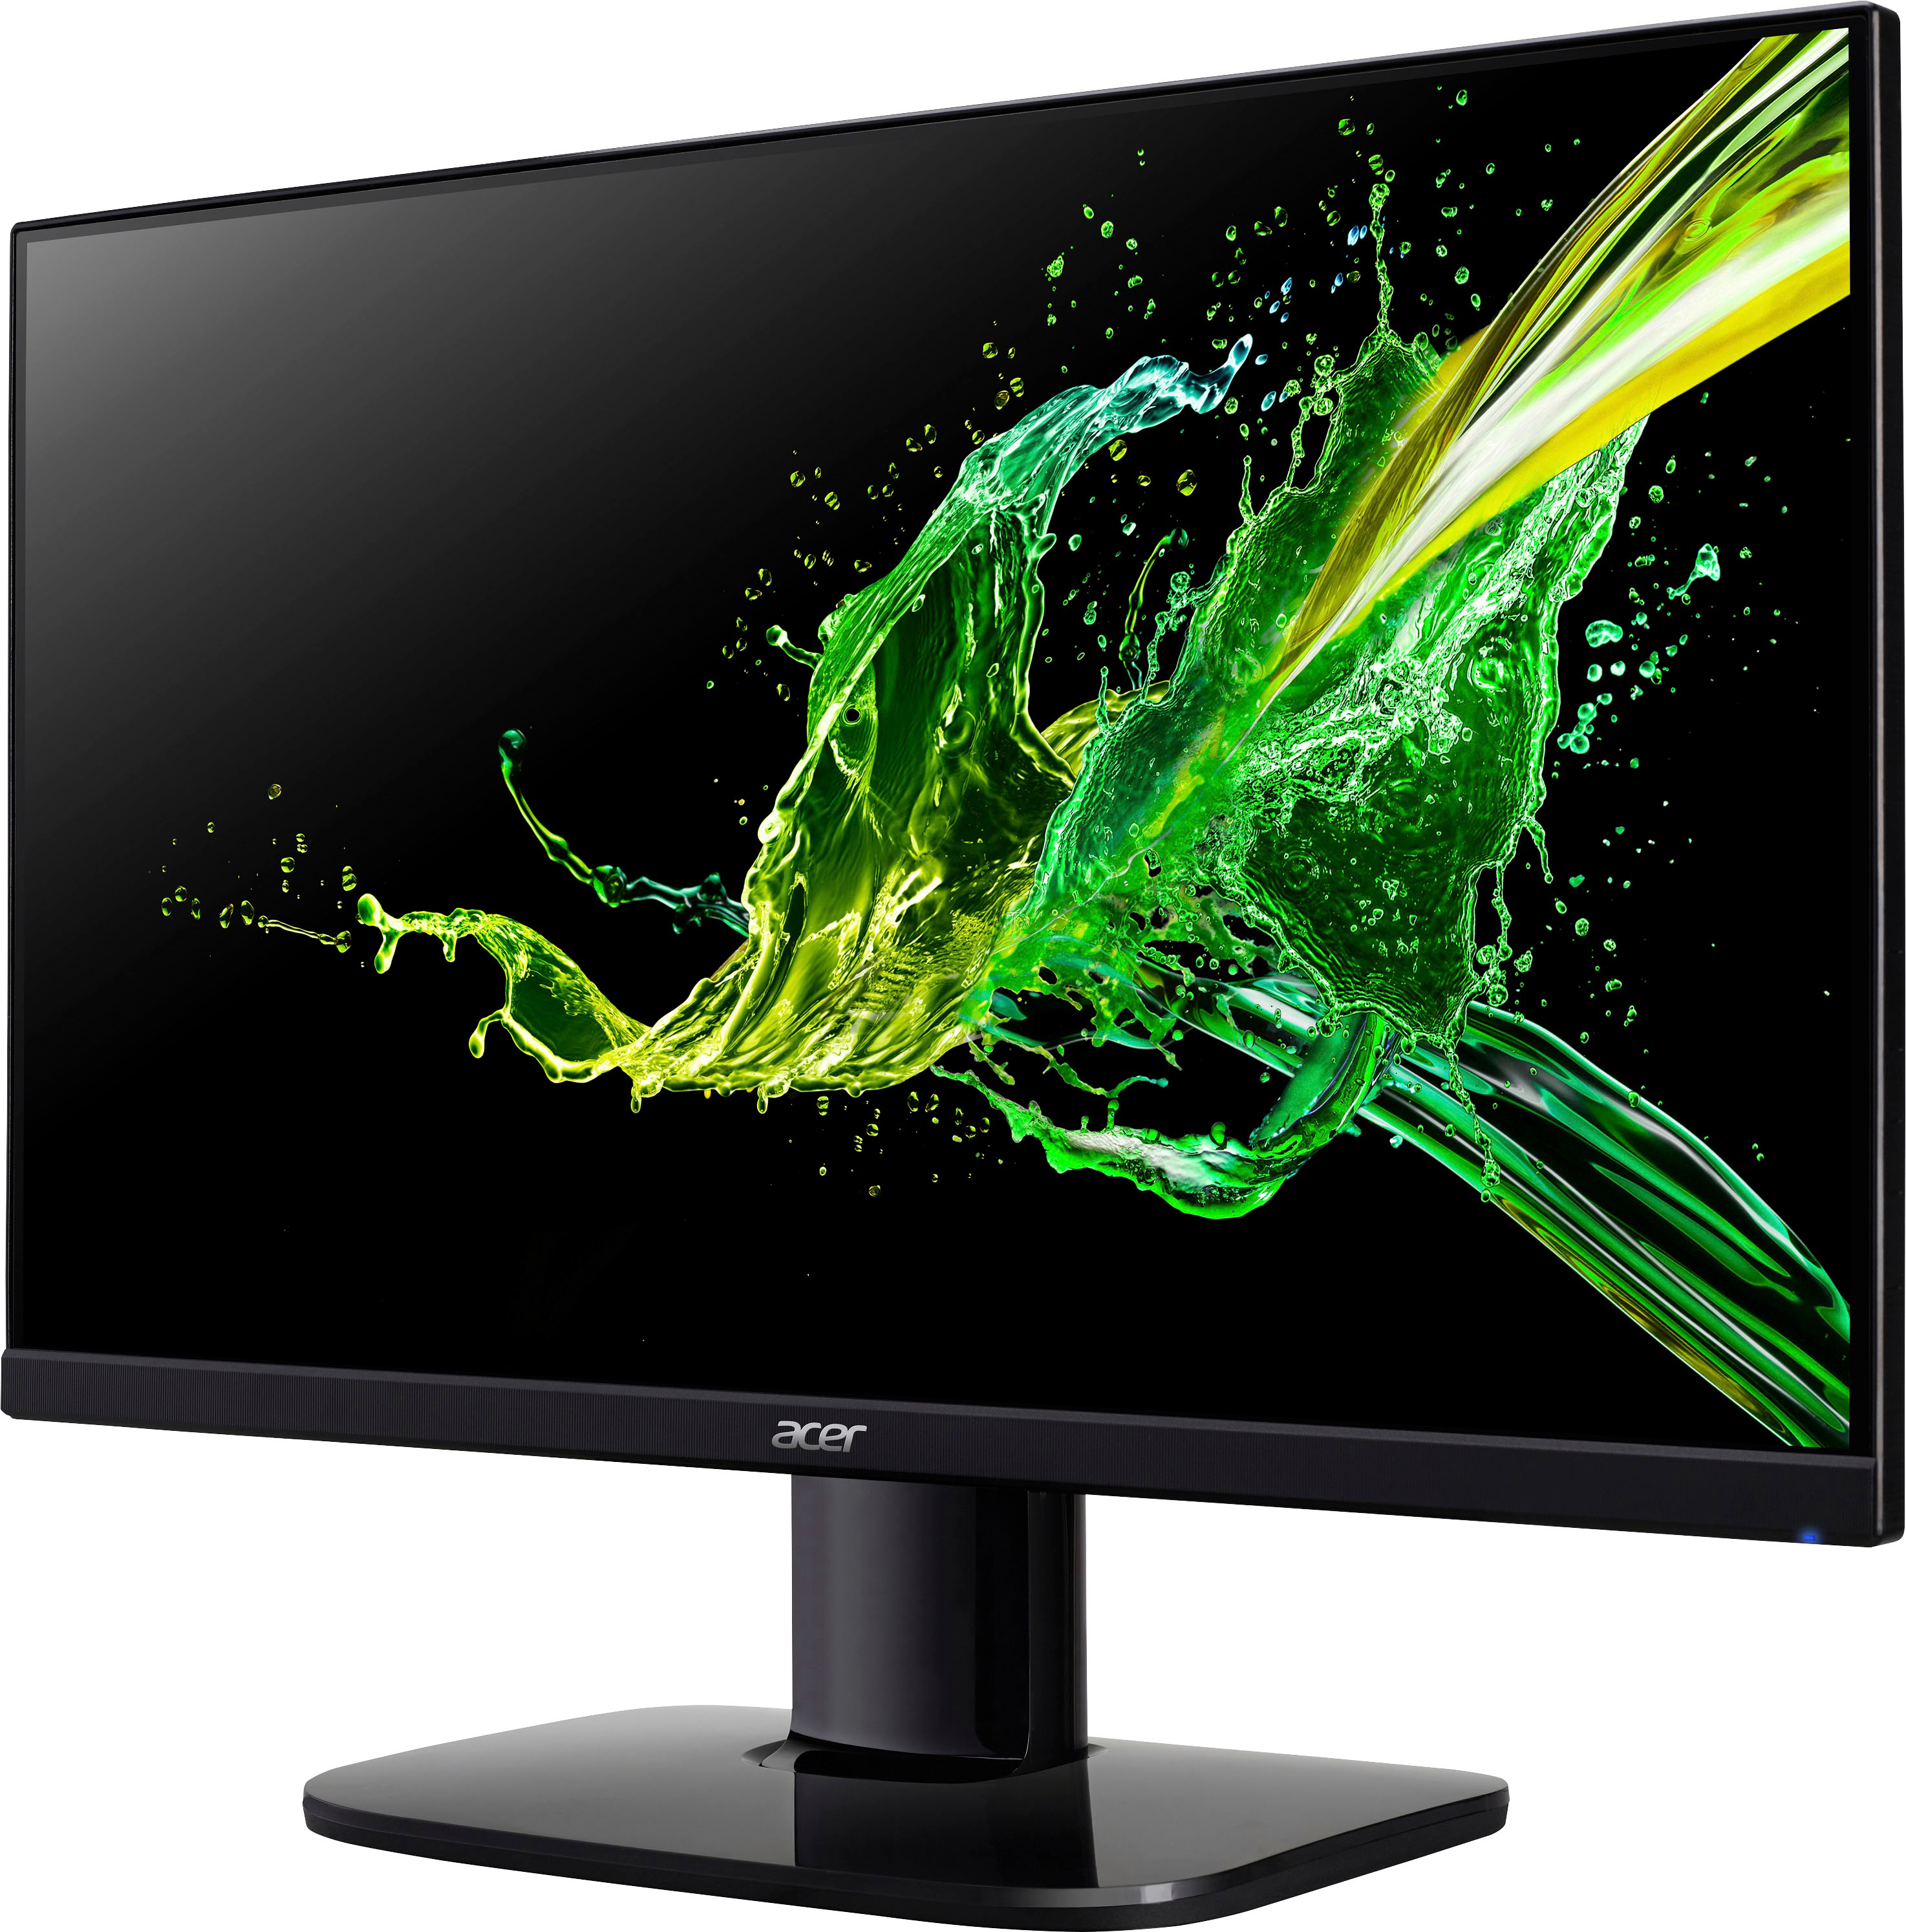 Acer KA272 Ebi 27” Full HD IPS Monitor AMD FreeSync Technology 1 x HDMI 1.4  & 1 x VGA Black KA272 Ebi - Best Buy